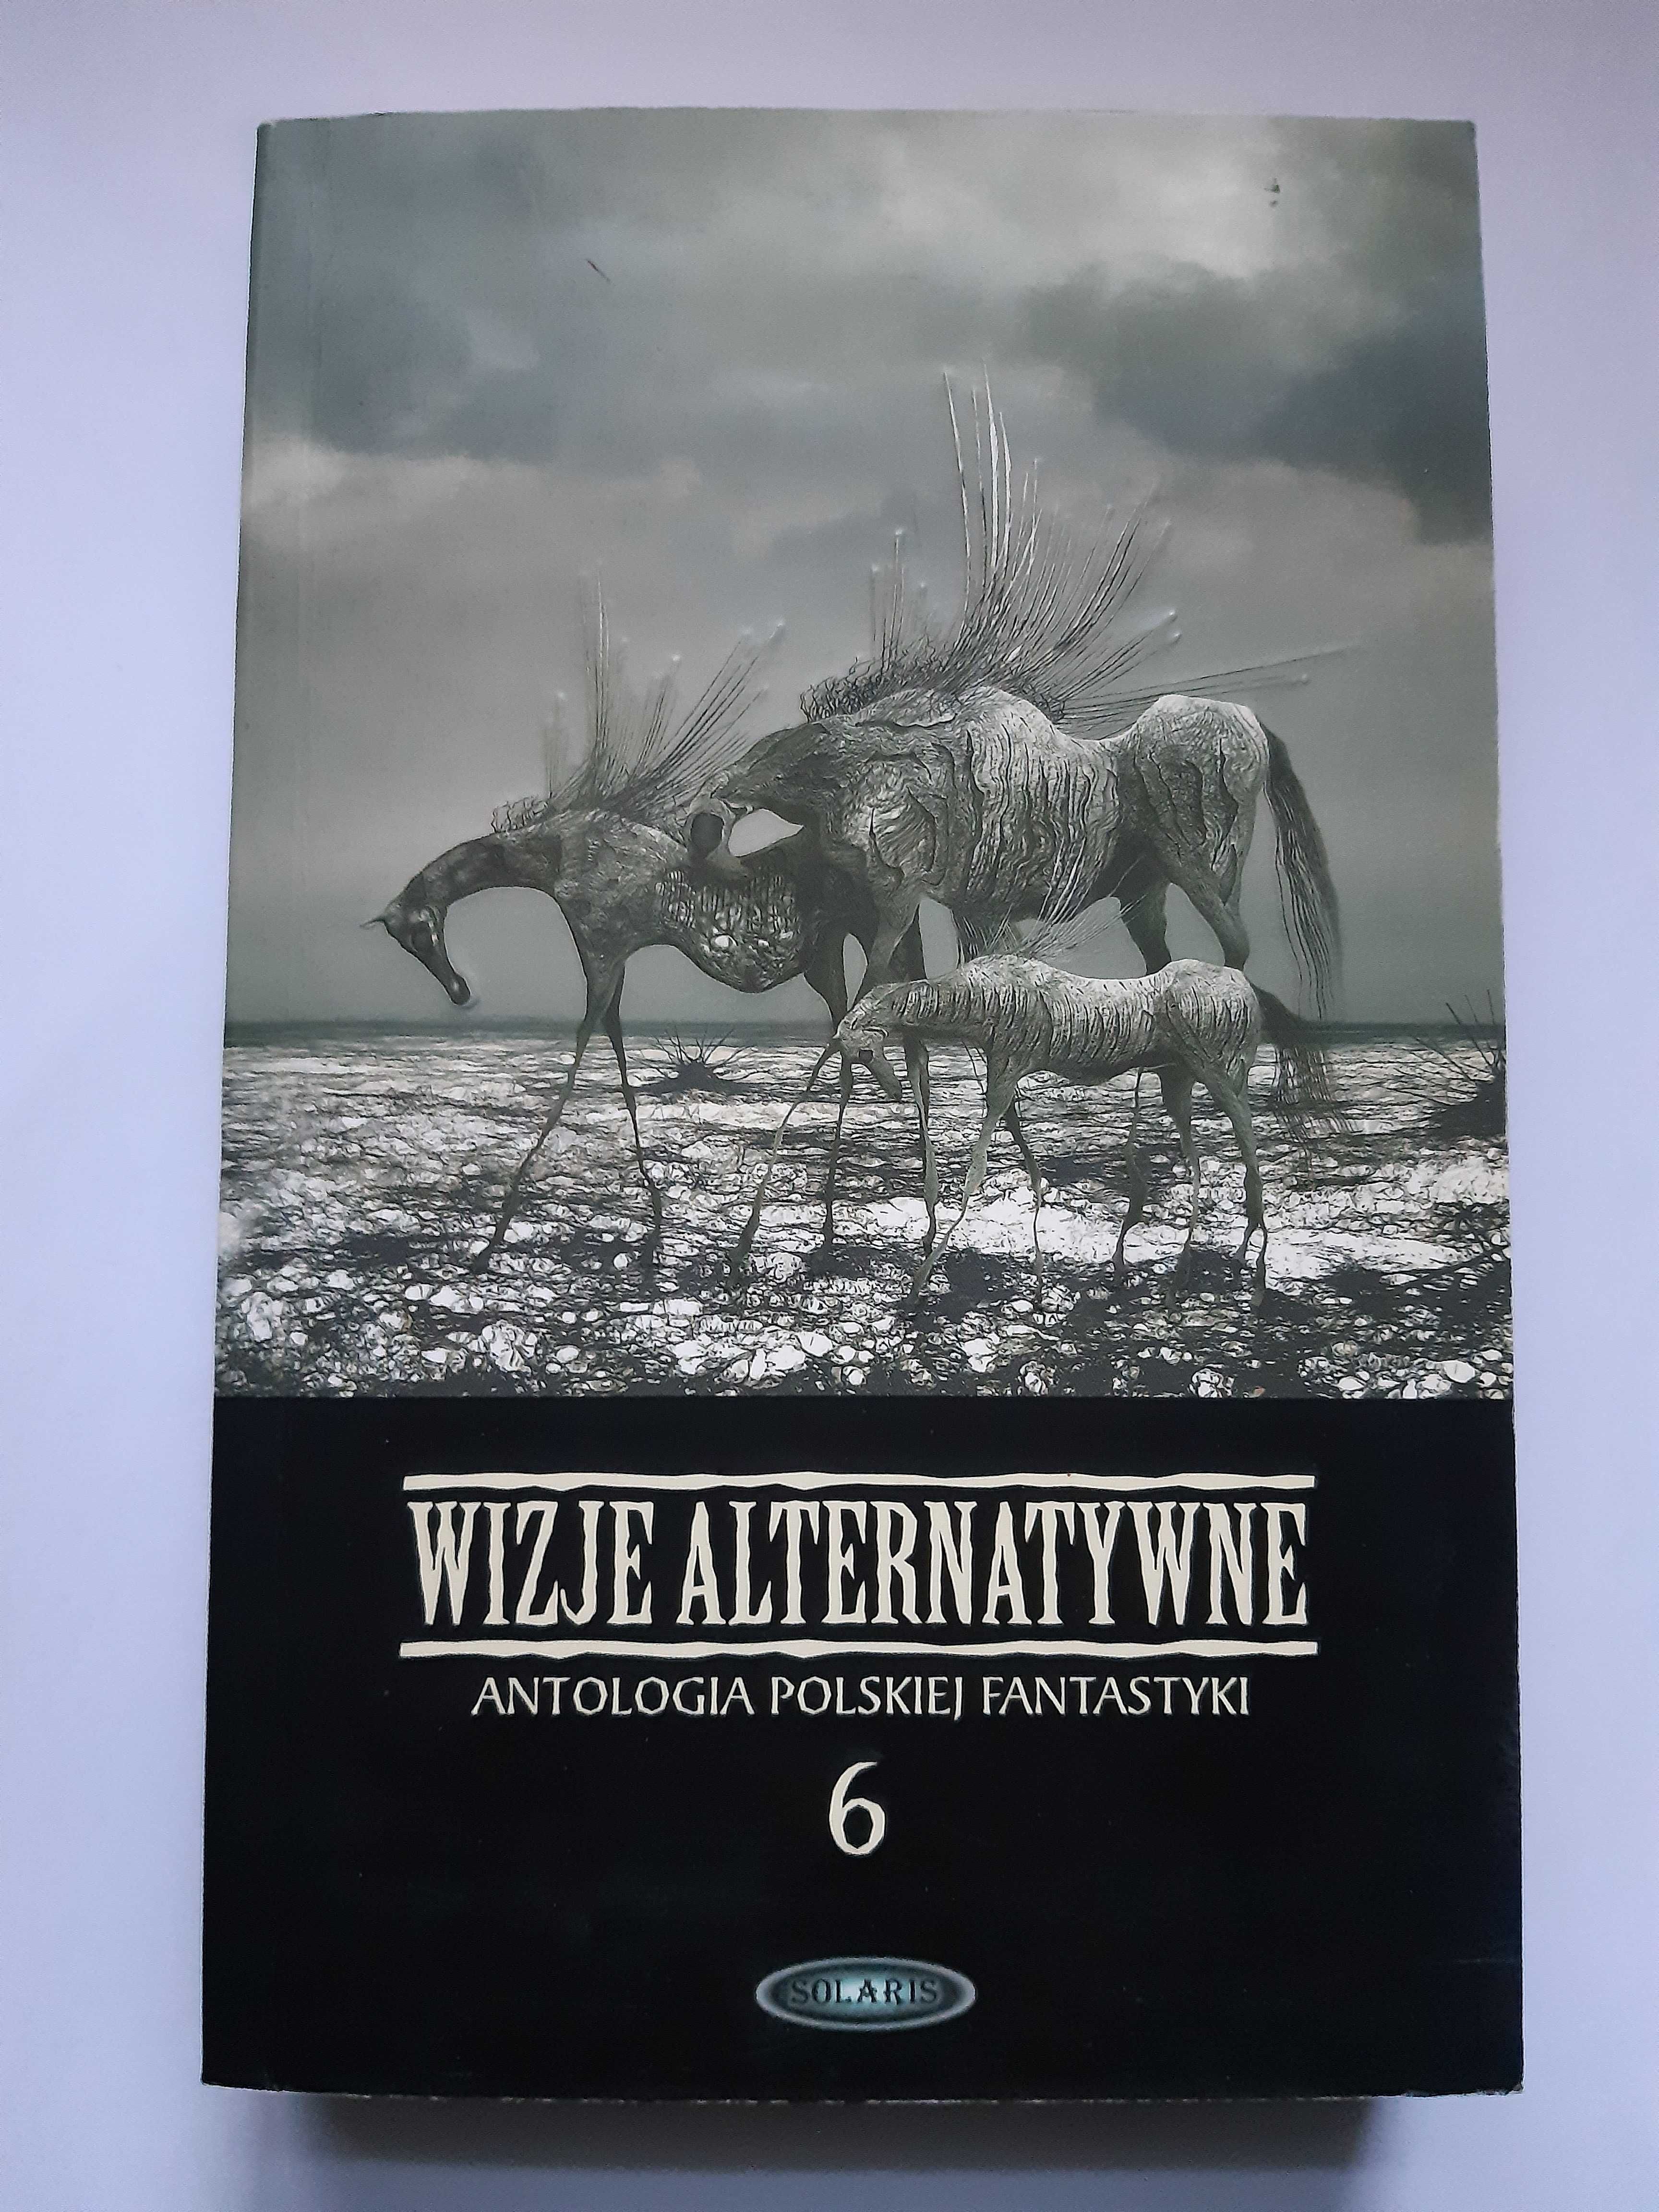 Wizje alternatywne 6 - Antologia polskiej fantastyki